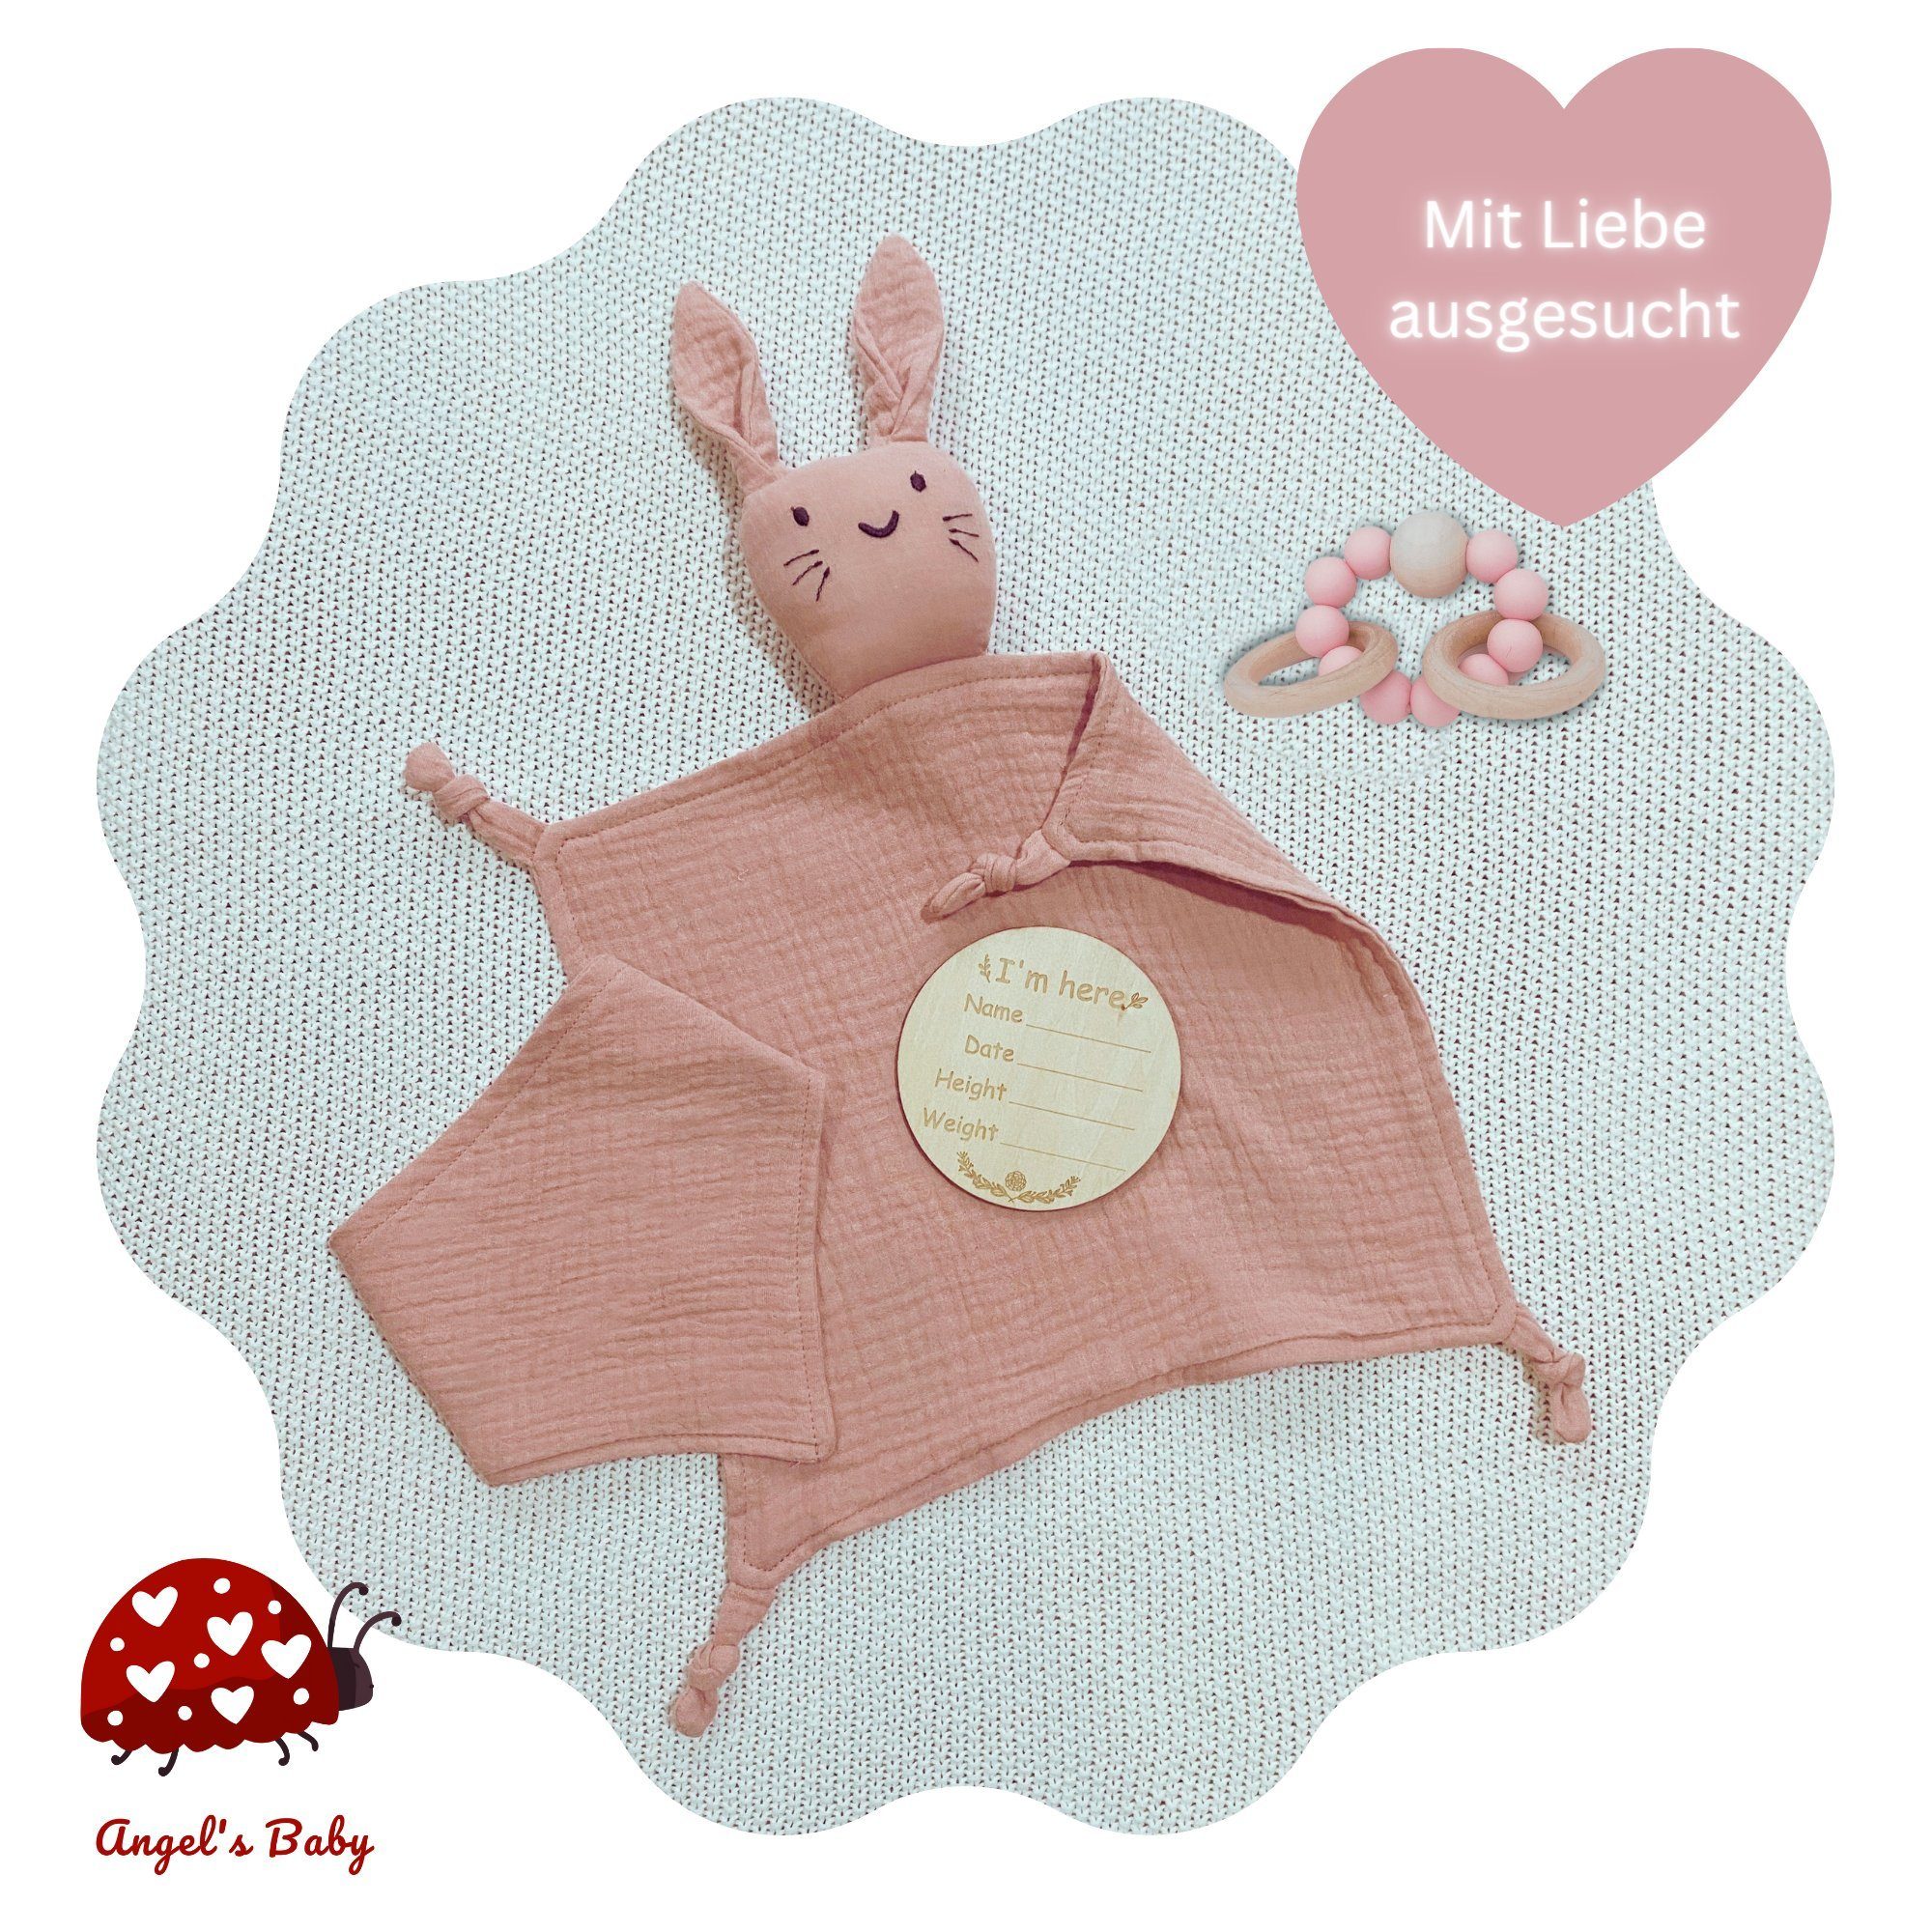 Angel's Baby Neugeborenen-Geschenkset mit Beißring Geburt Geschenkverpackung Schnuffeltuch, gratis mit Rosa + Teile (Set, Grußkarte, zur + Geschenkbox Geschenk Grußkarte) 4